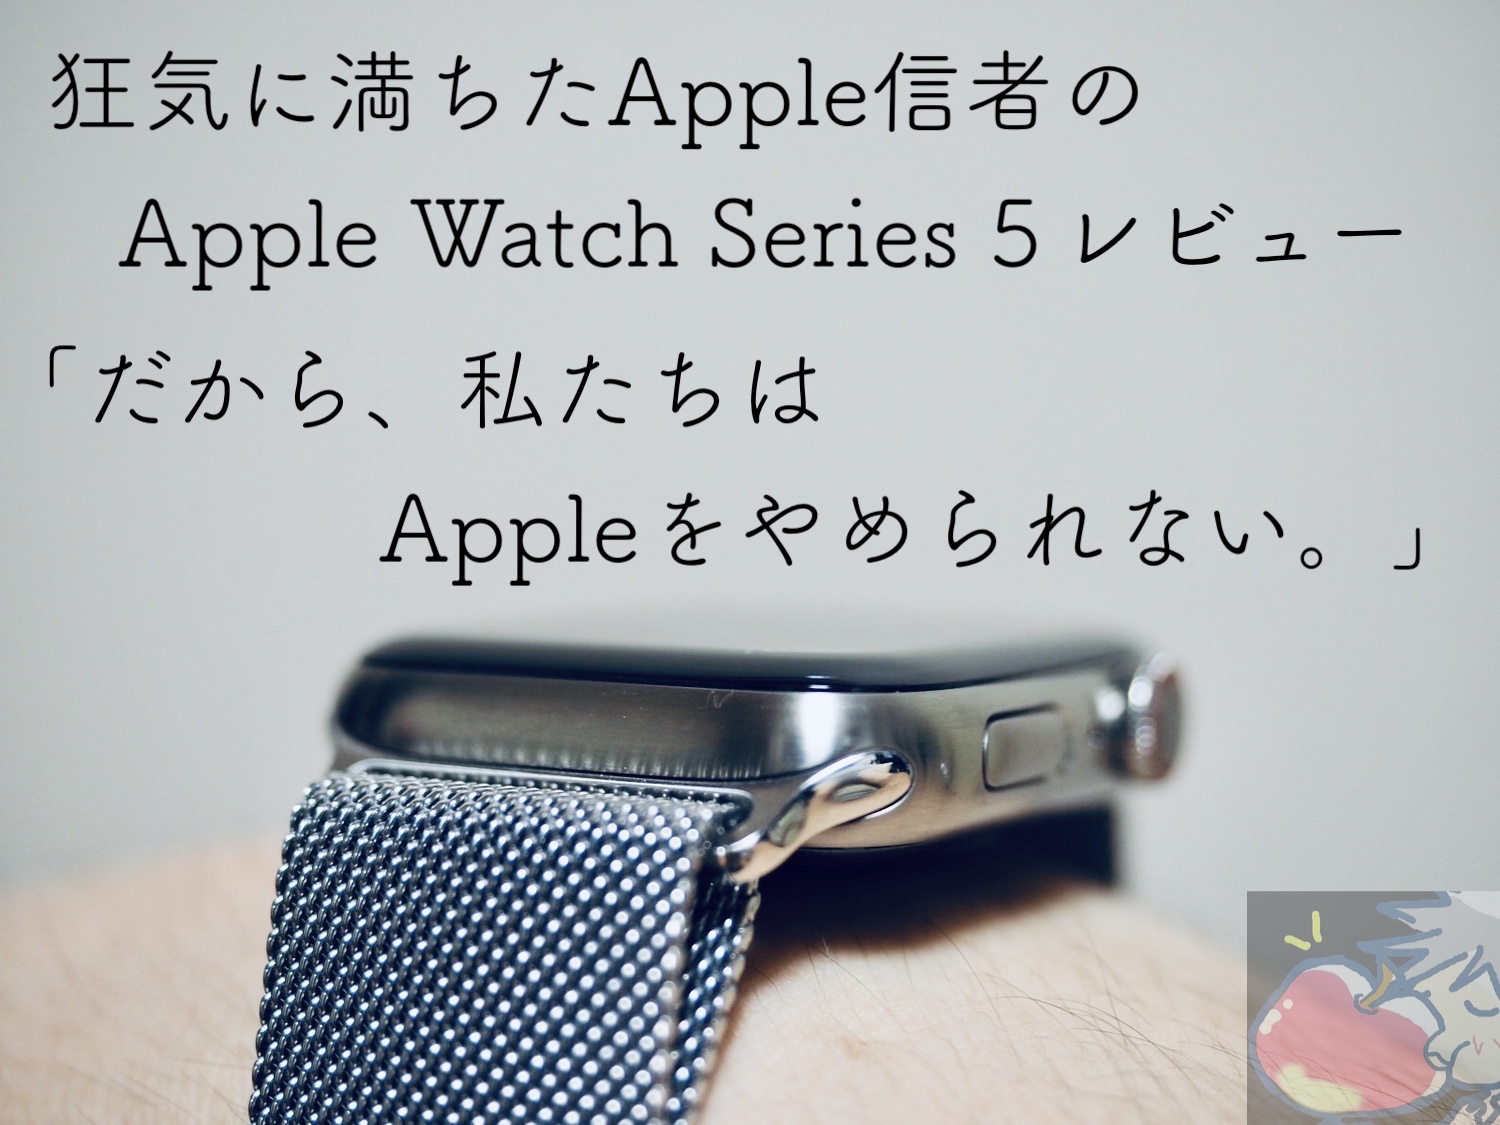 狂気に満ちたApple信者のApple Watch Series 5レビュー「だから、私たちはAppleをやめられない。」